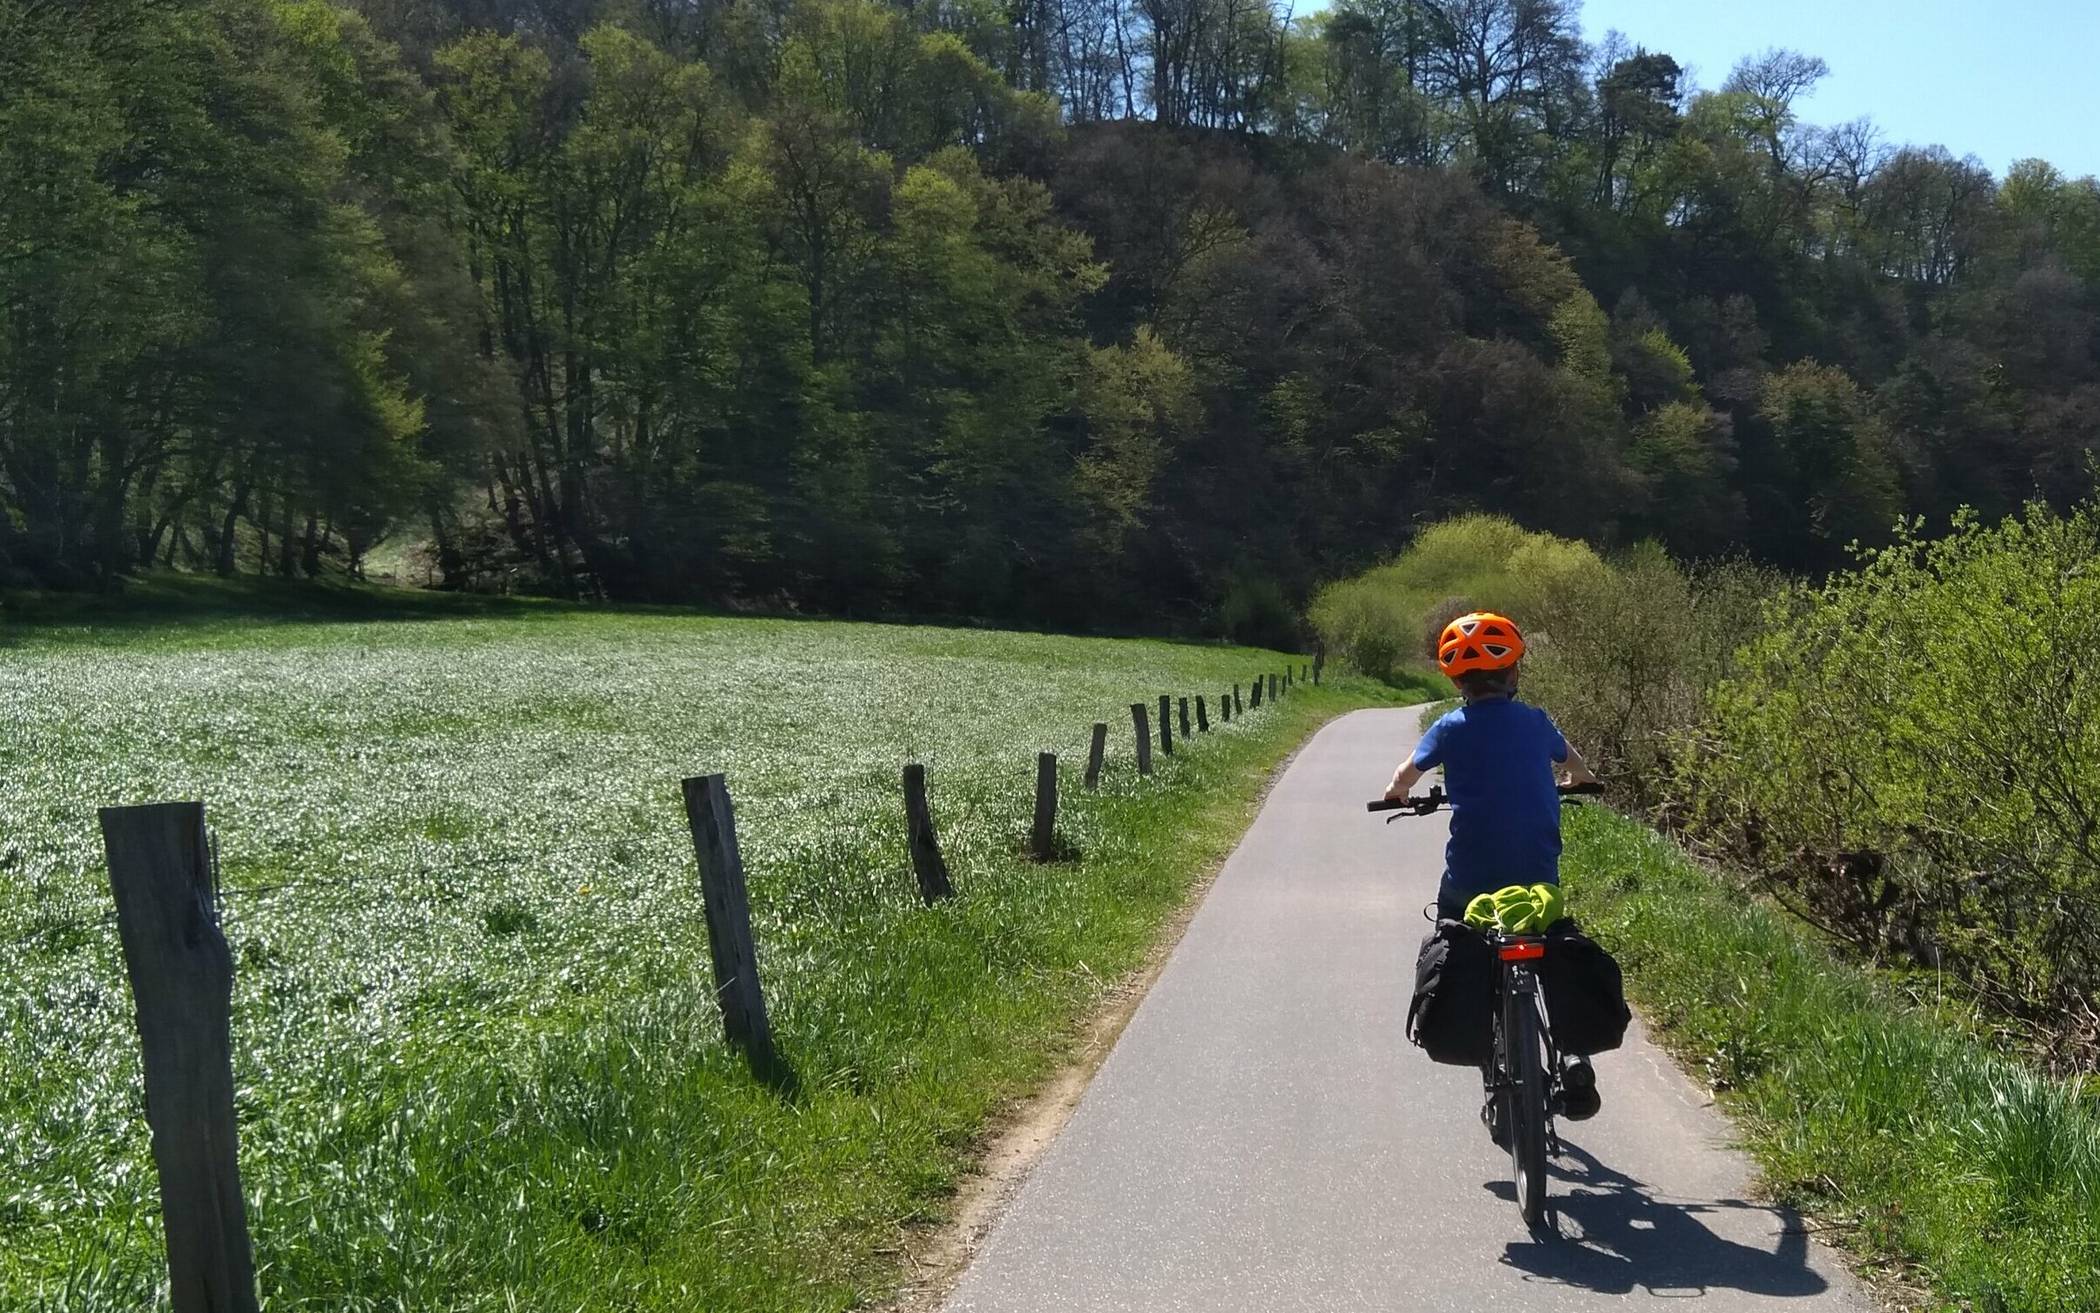  Schöne Radwege in malerischer Landschaft - ein Traum für Radfahrer. 